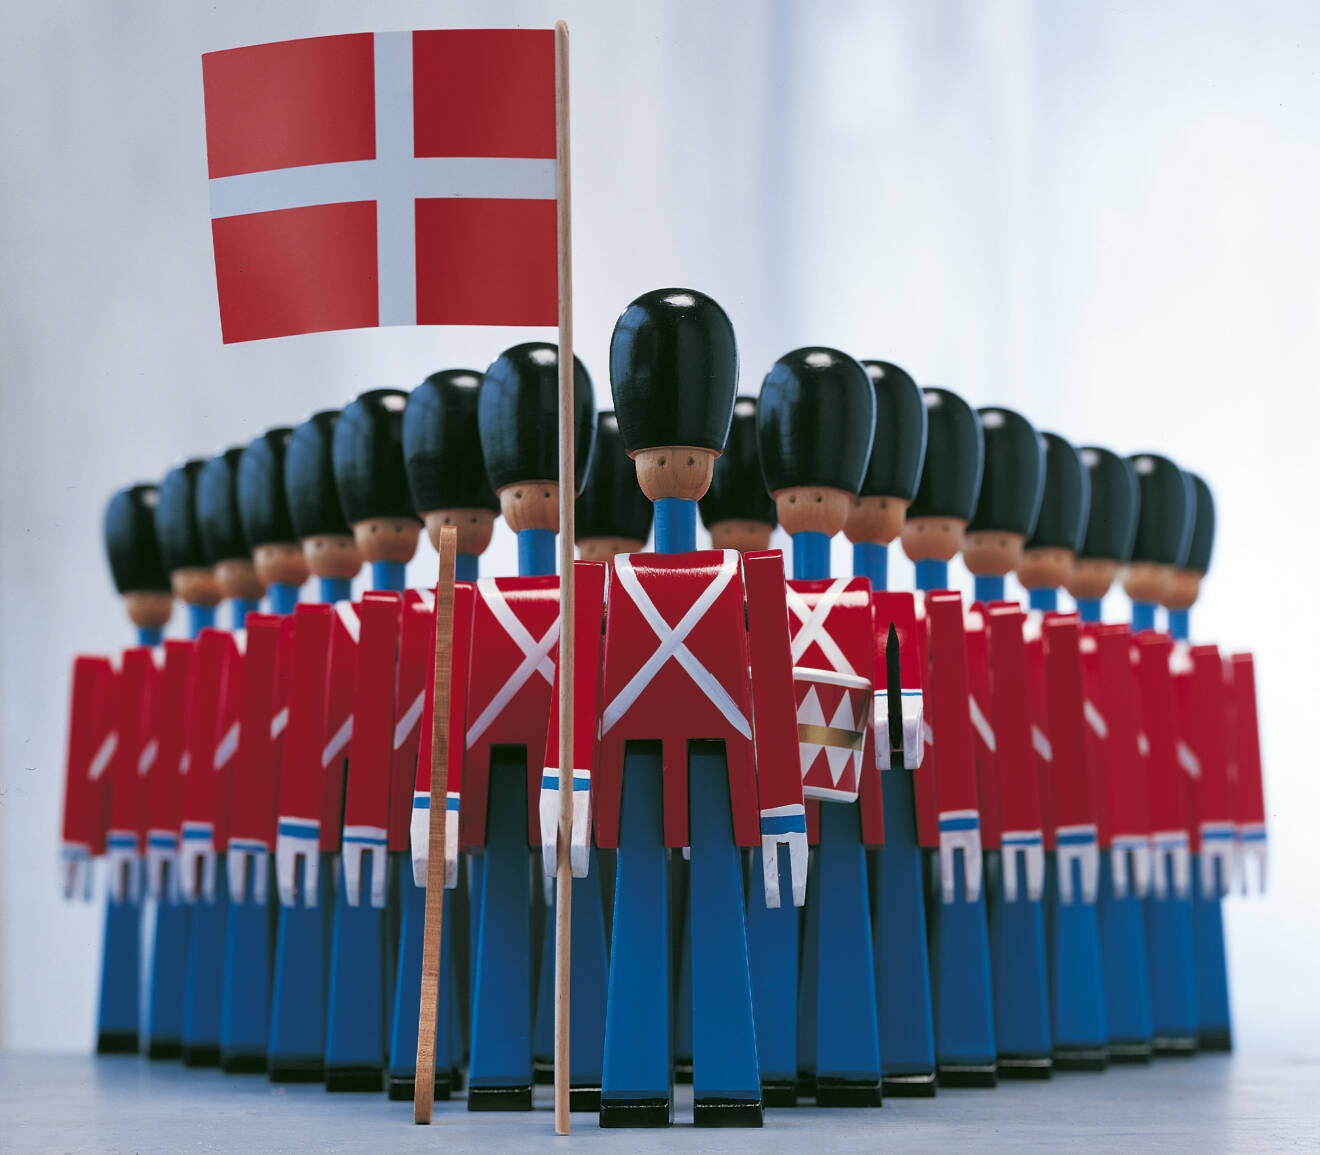 Dronningens soldater med dansk flagga i handen – design av Kay Bojesen.